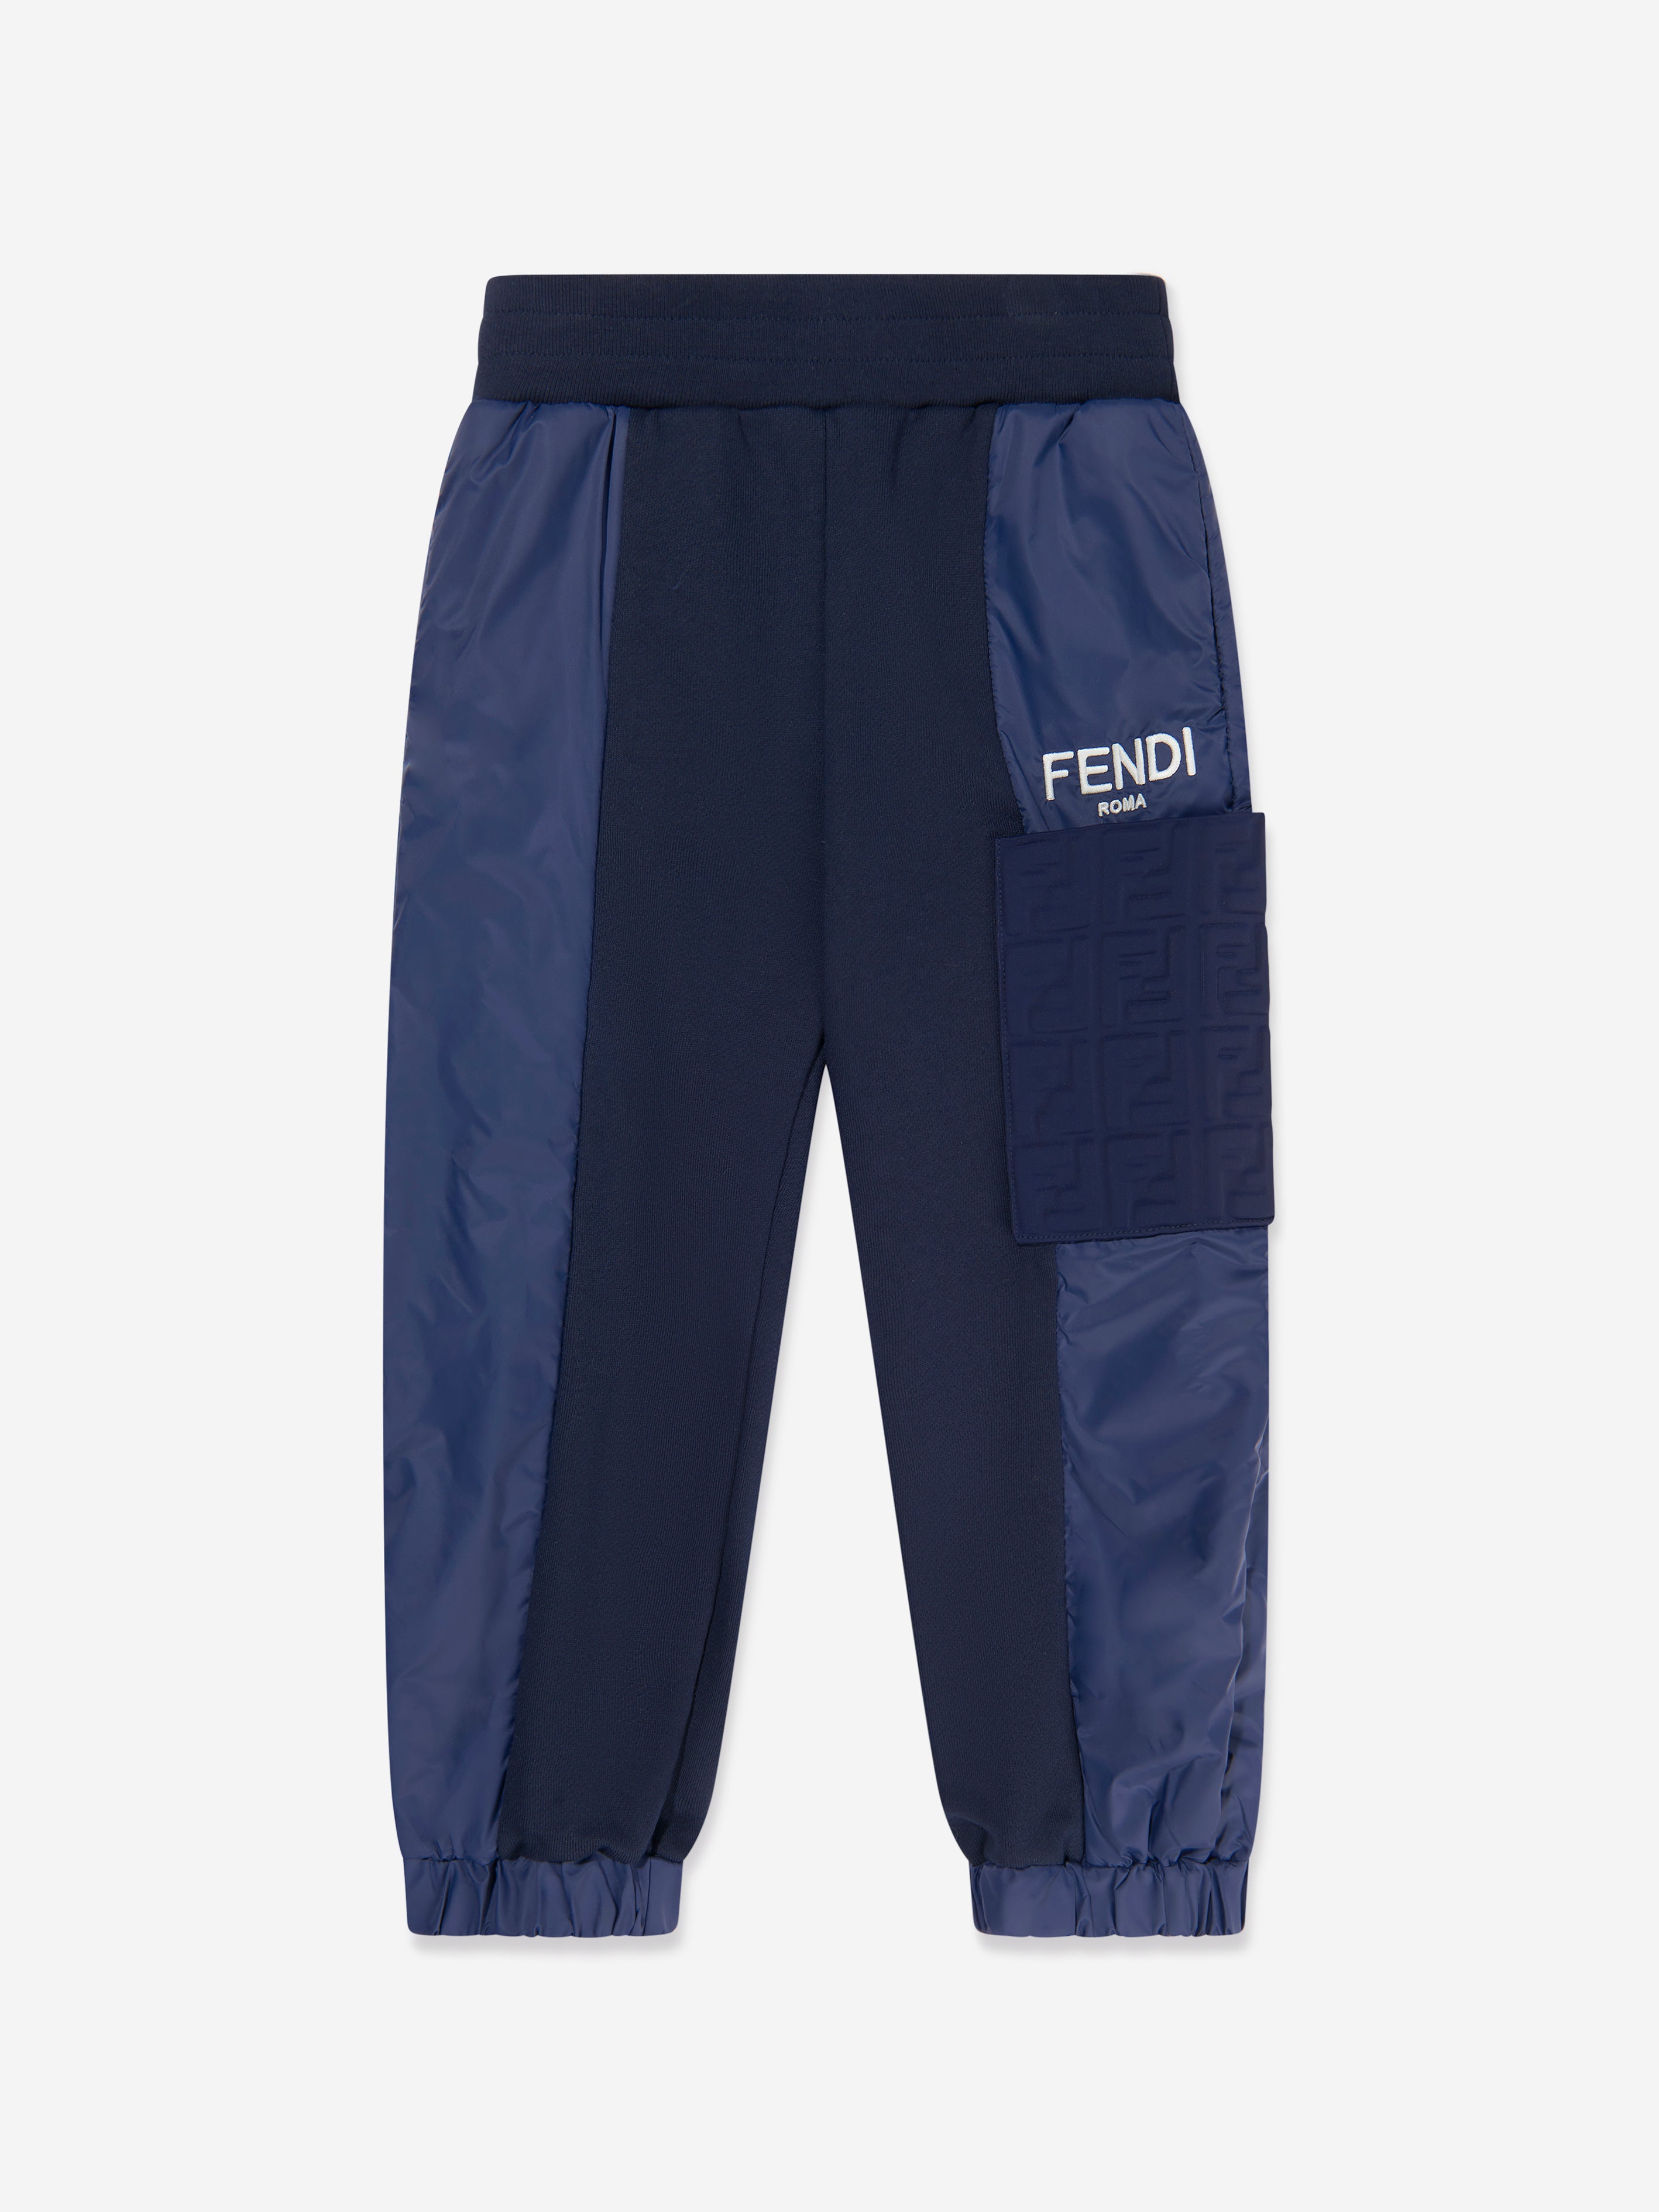 Fendi Babies' Boys Logo Sweatpants In Blue